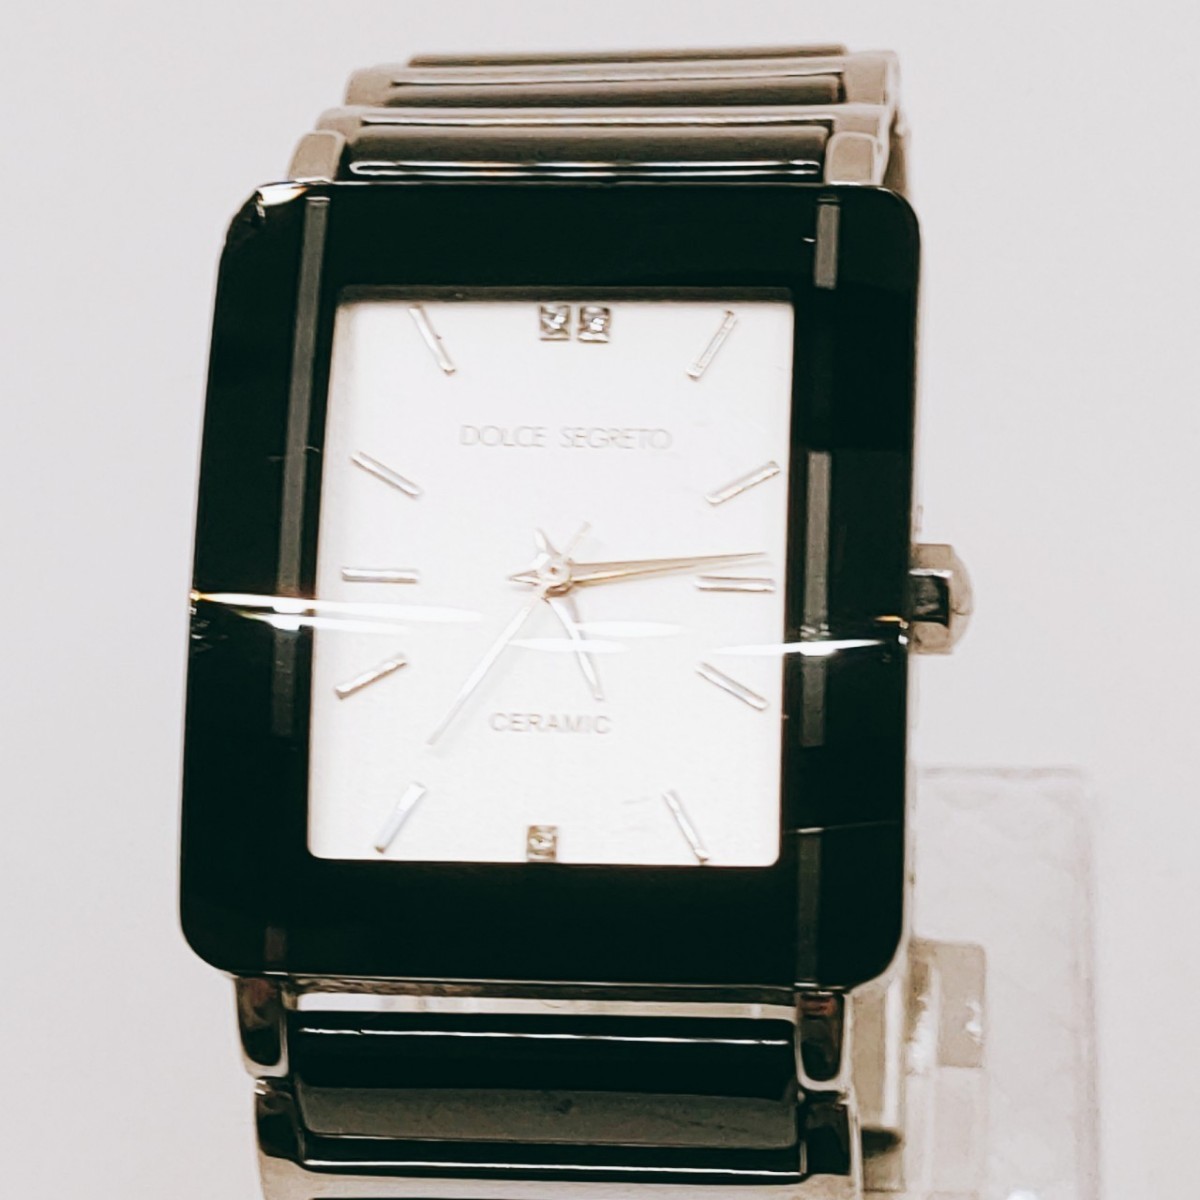 #64 DOLCE SEGRETO ドルチェセグレート RD100 腕時計 アナログ 白文字盤 シルバー基調 時計 とけい トケイ ヴィンテージ アンティーク_画像1